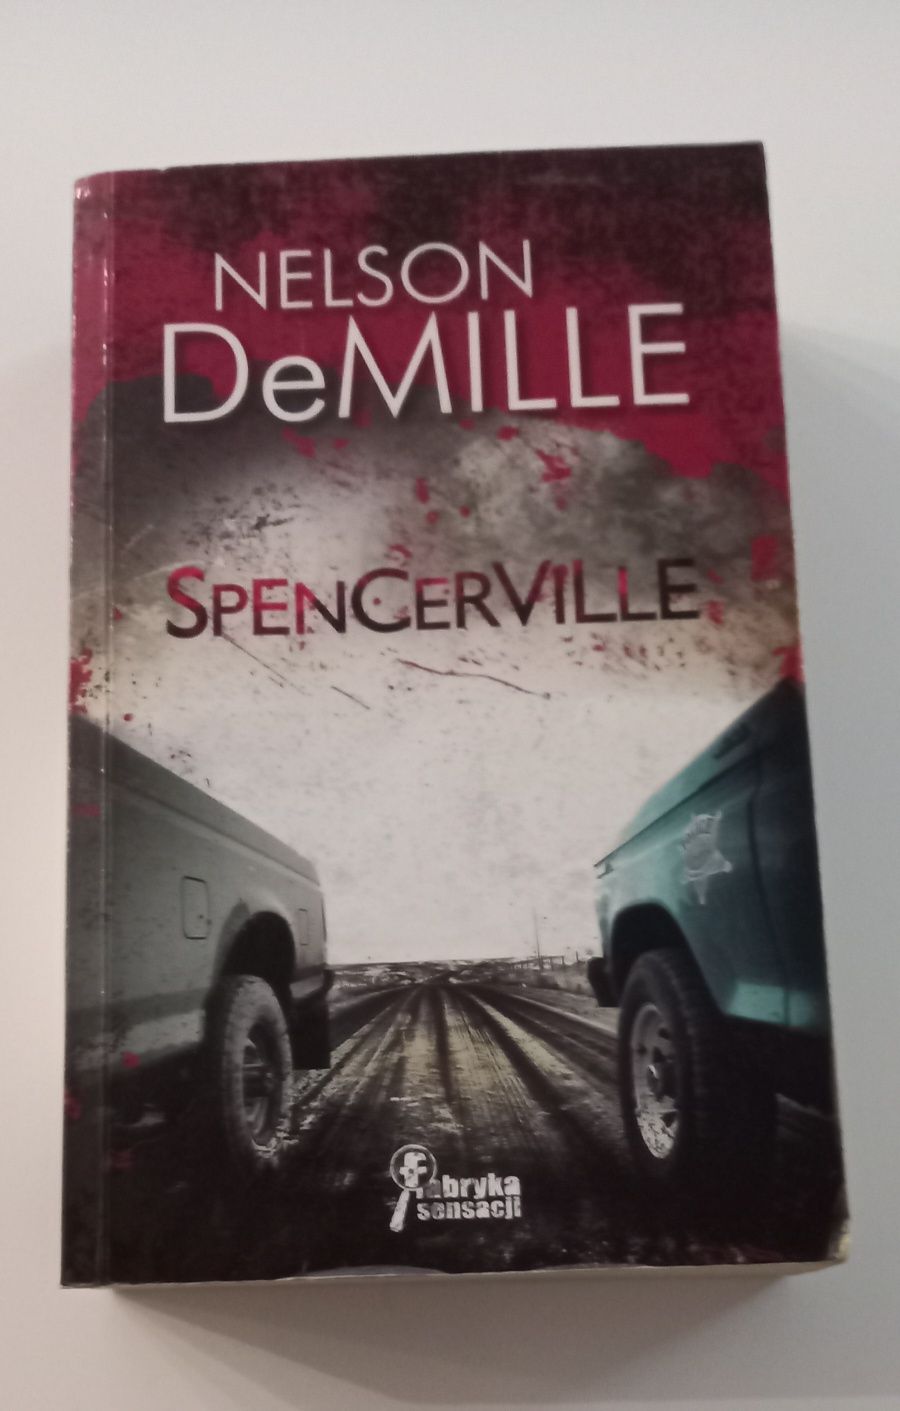 Spencerville Nelson DeMille